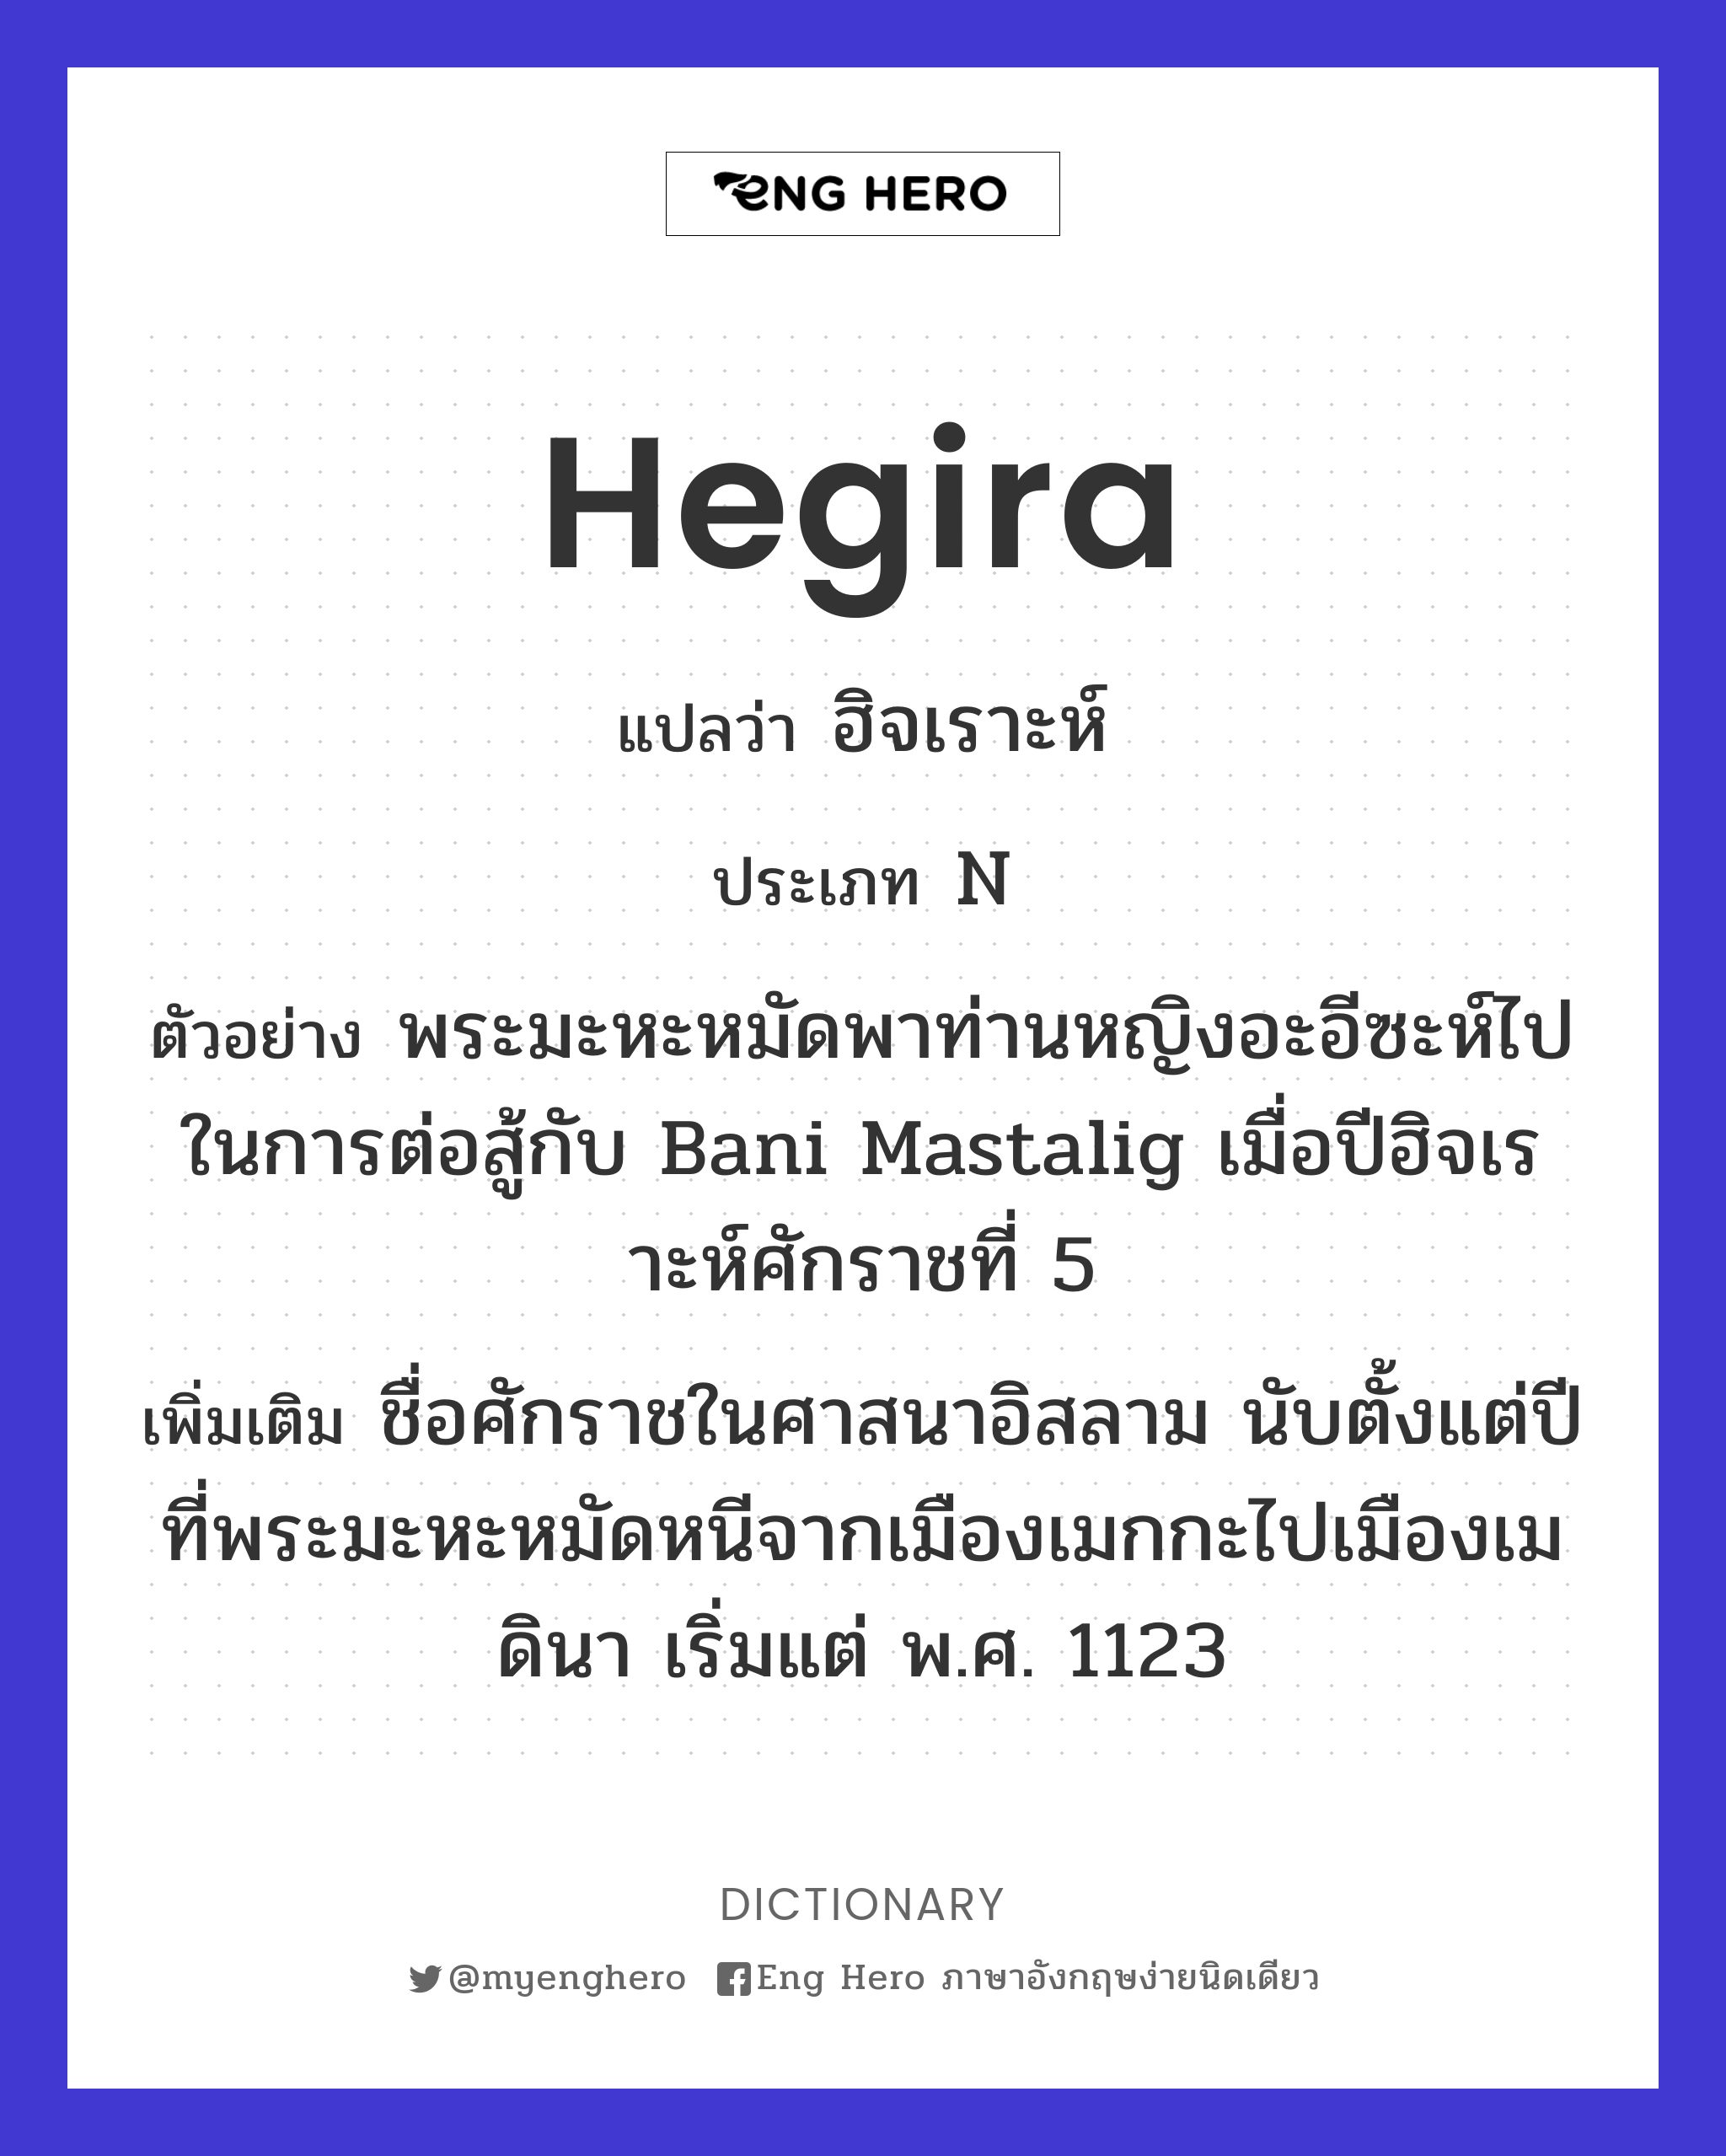 Hegira